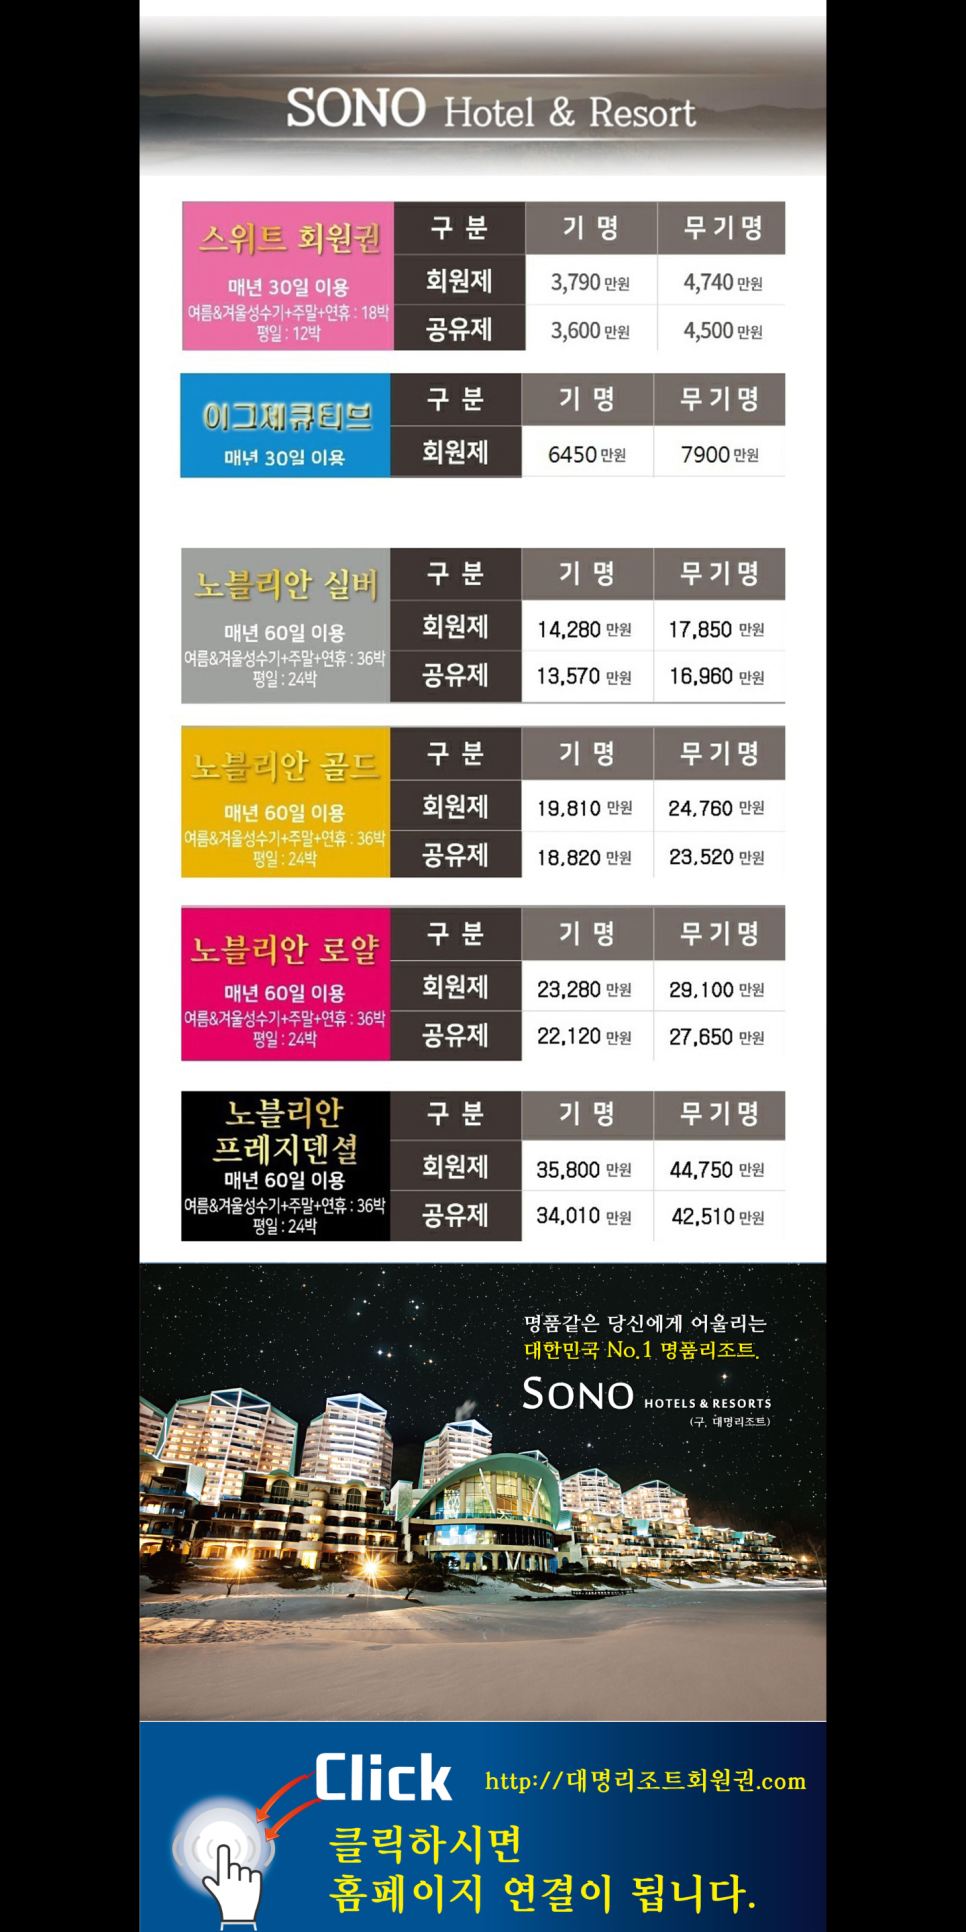 홍천 소노벨 비발디파크 대명콘도 회원권 가격 후기